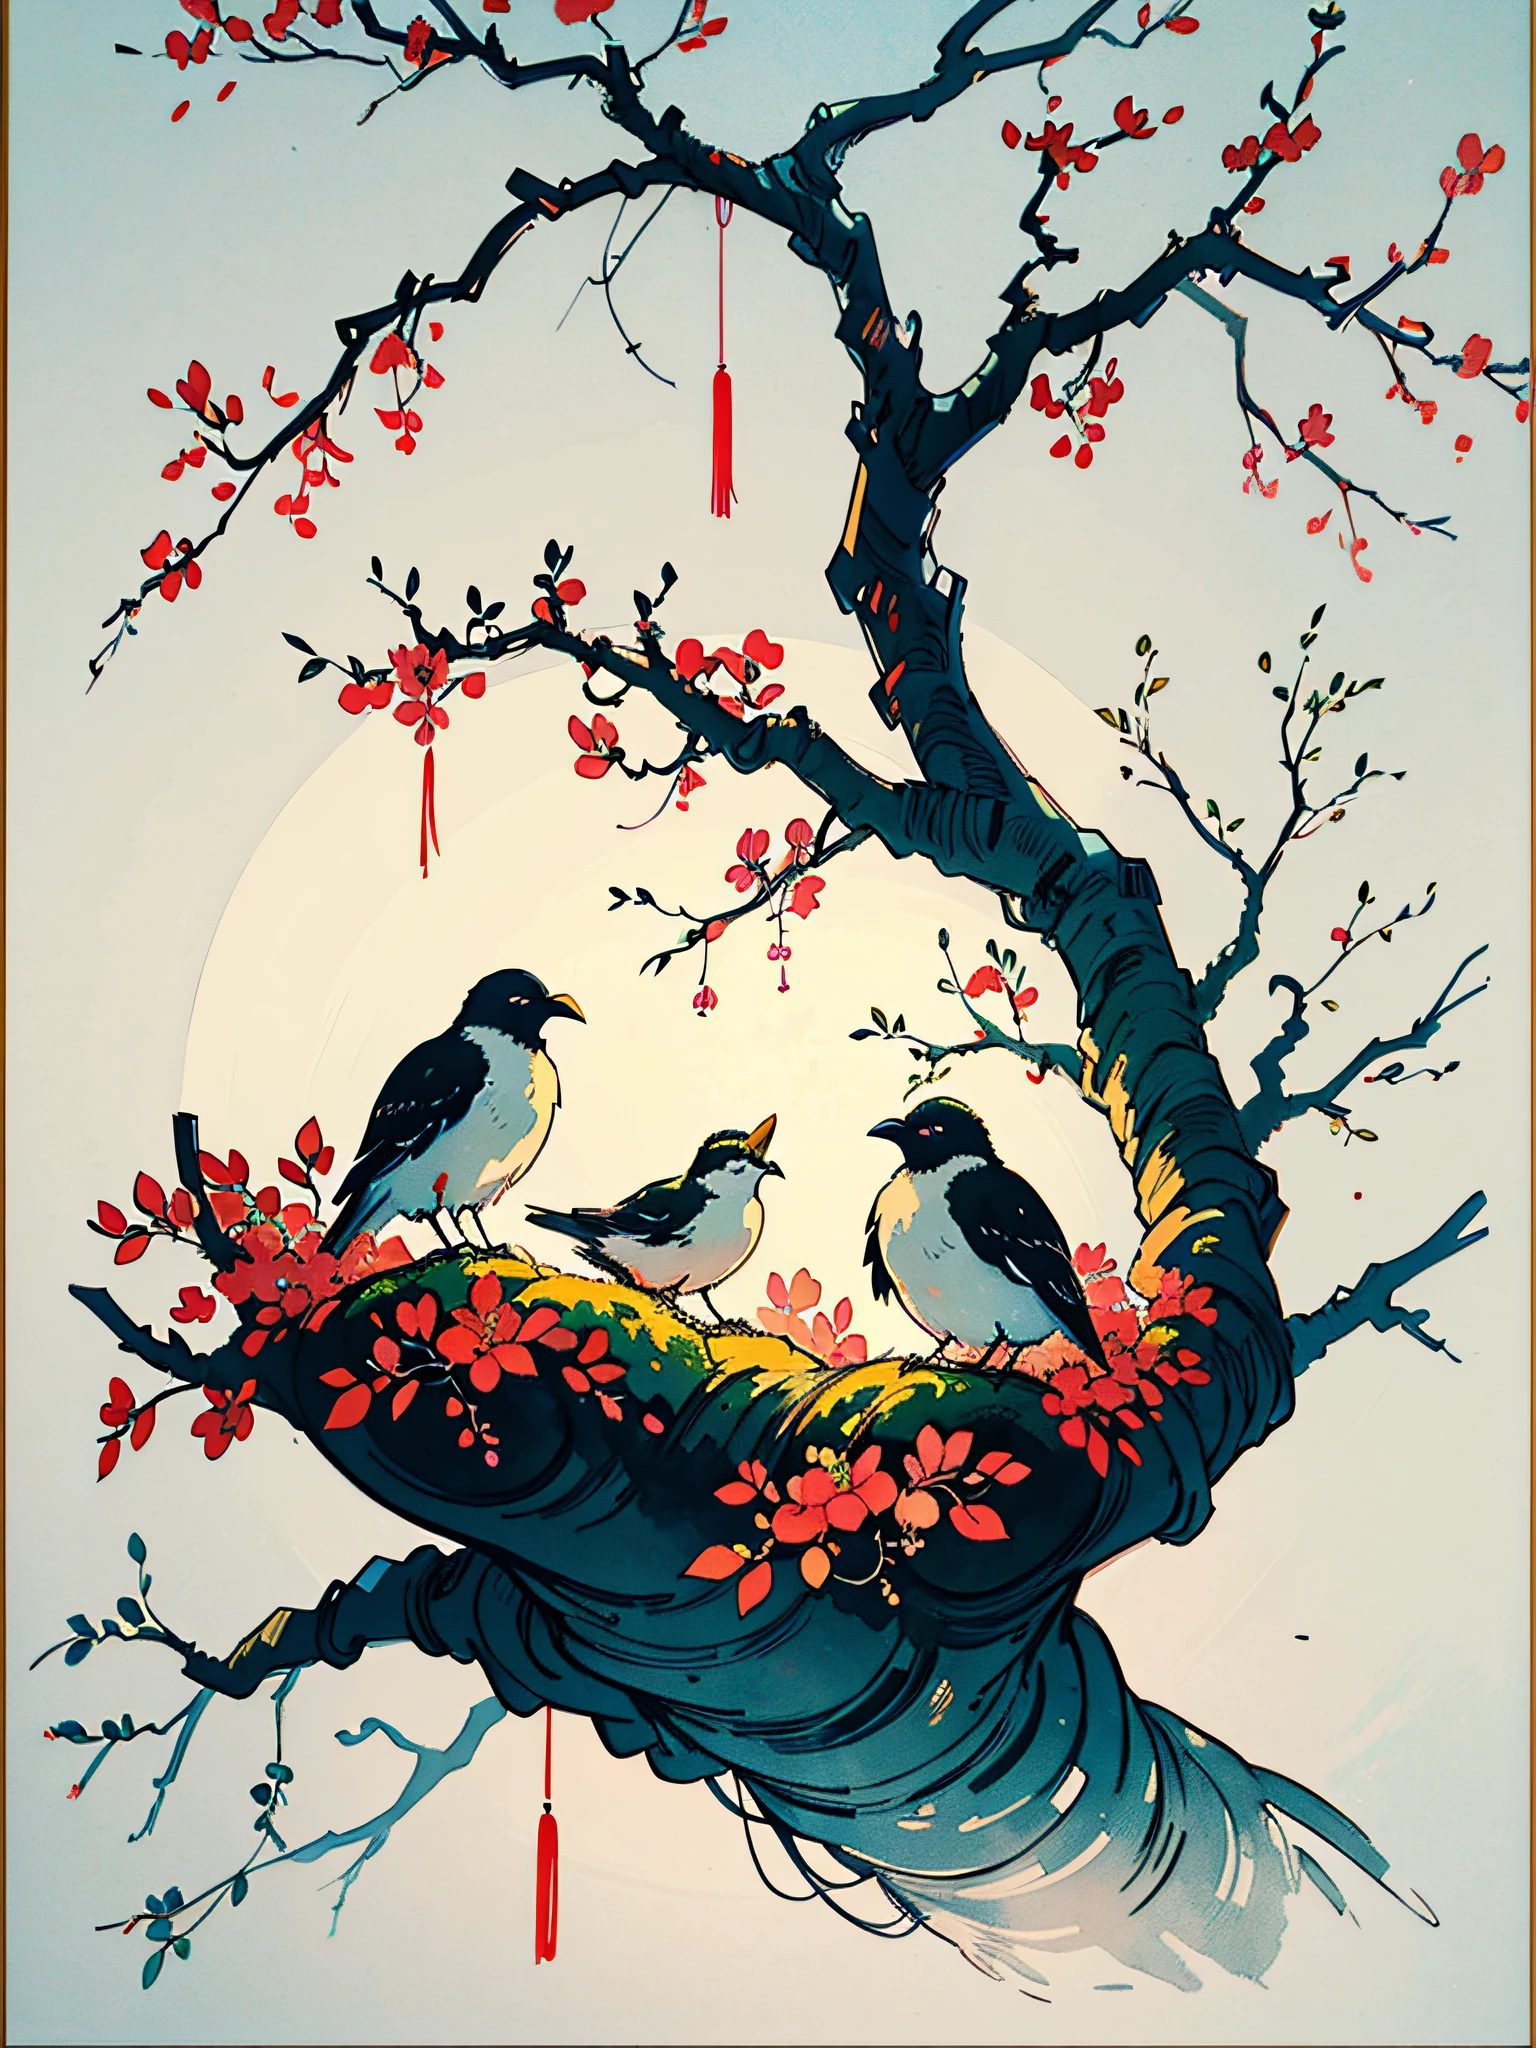 白黒のインクと淡い色の絵画, 静かな果樹園を描いた図に漢字が書かれている, 前景には巣を作っている鳥のつがいと果物の実った枝がある, アン・ジェンウェン, 有機的な絵画, ミニマリズム絵画, 美術&言語, インクとウォッシュ,